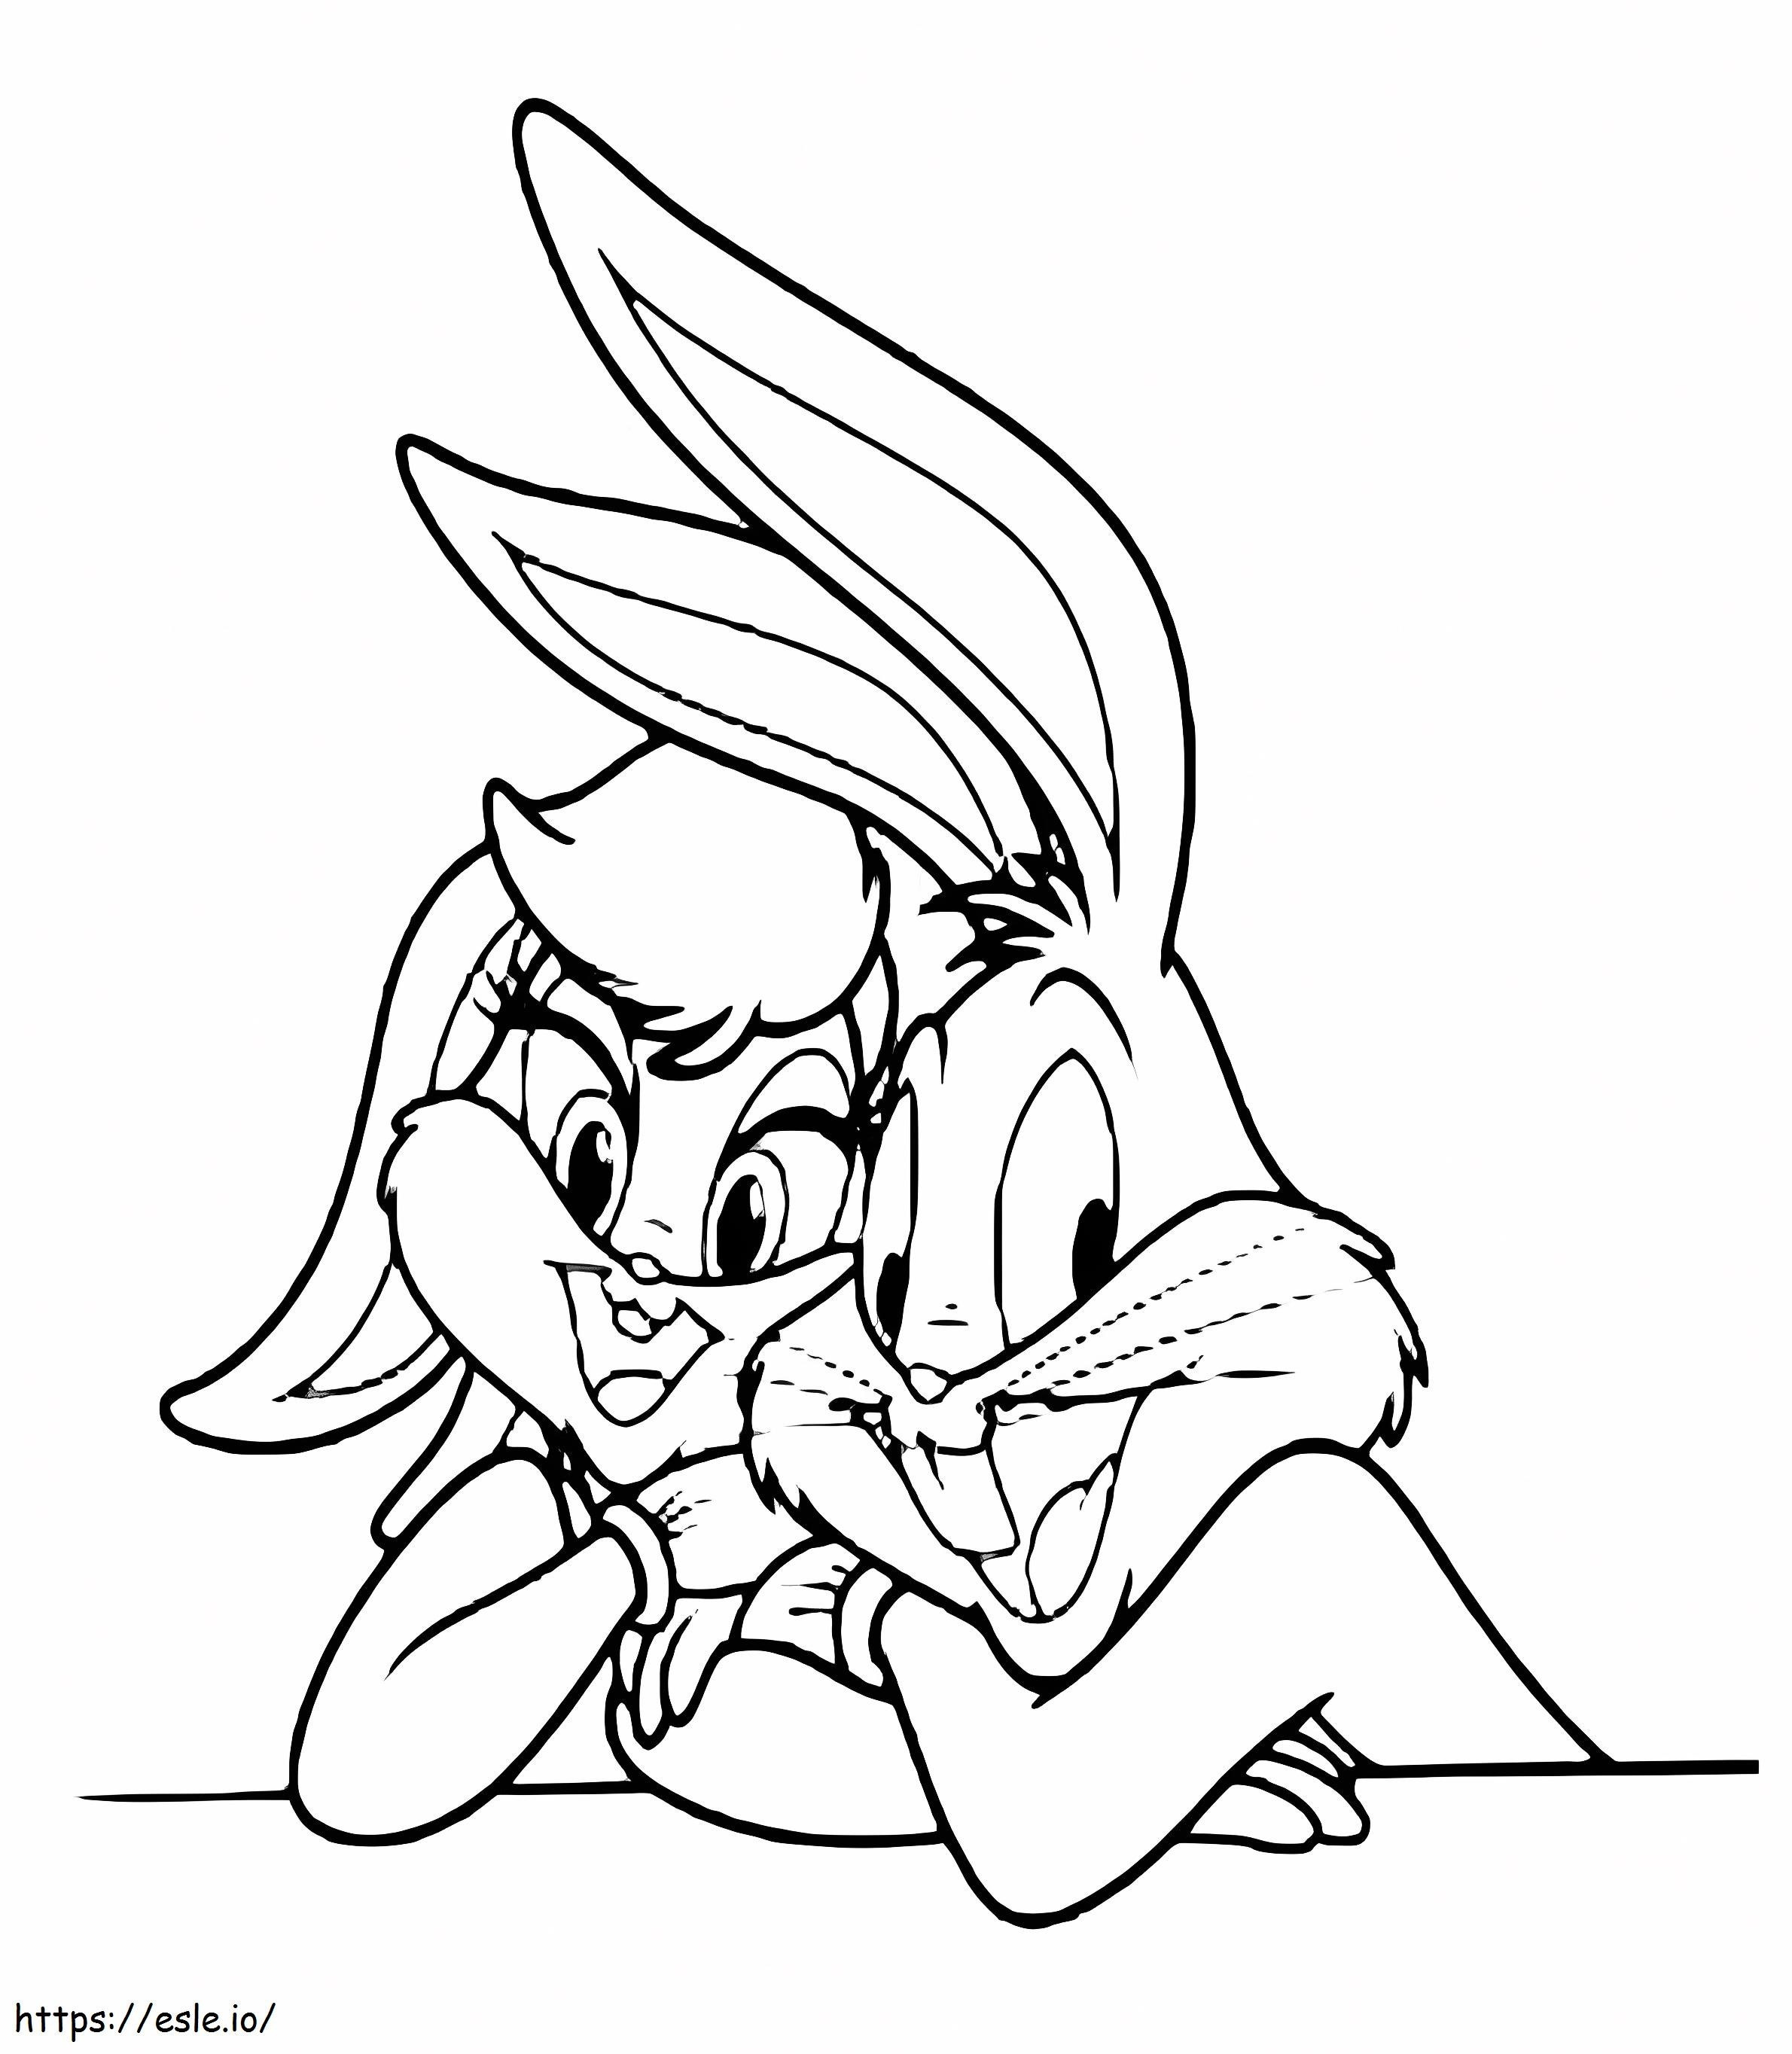 Bebé Bugs Bunny con Lola para colorear